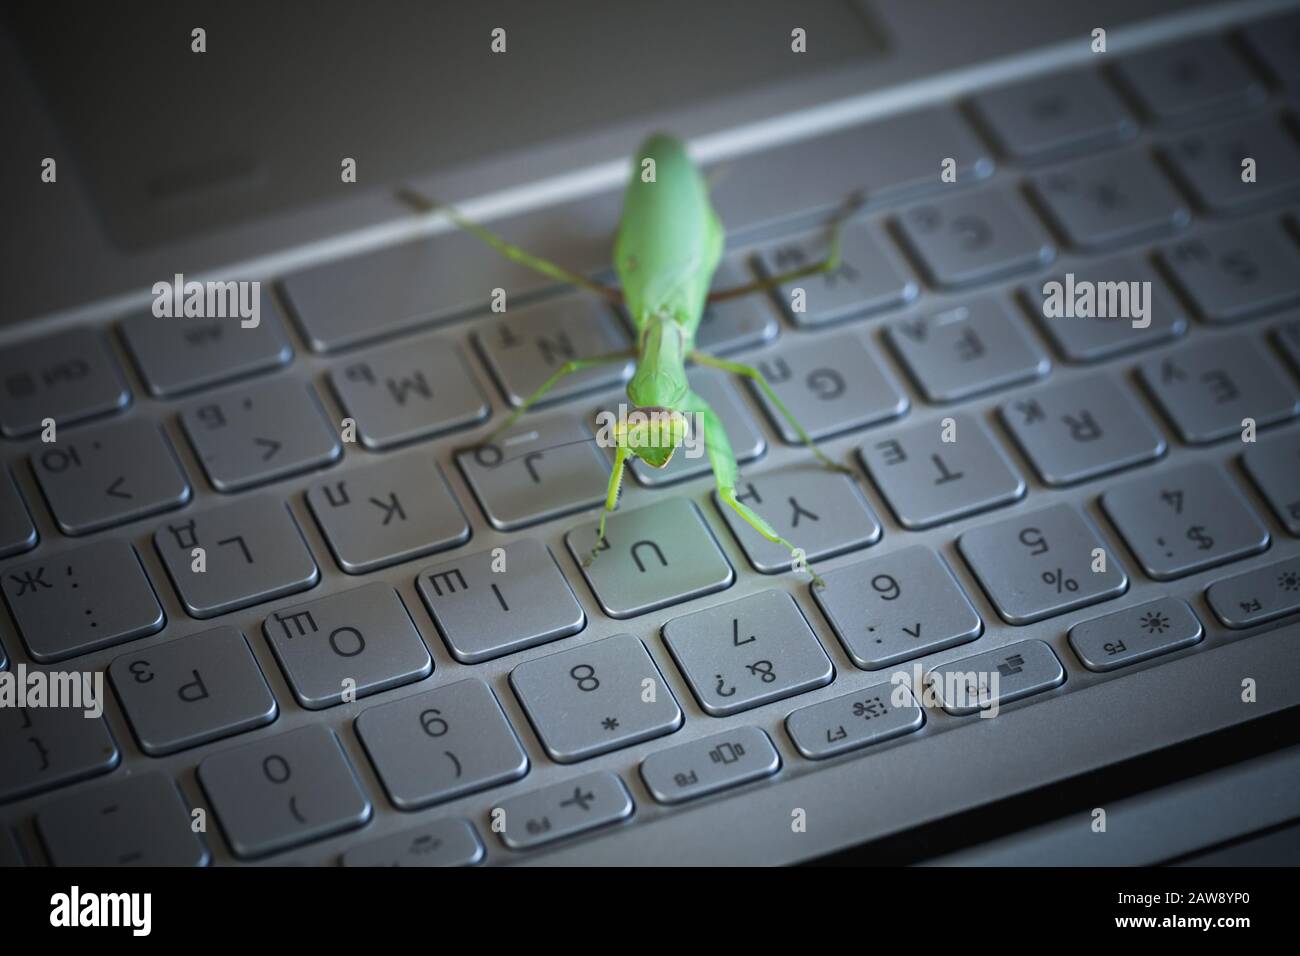 Ordinateur bug ou virus métaphore, la mantis verte est sur un clavier métallique brillant avec des lettres en anglais et en russe Banque D'Images